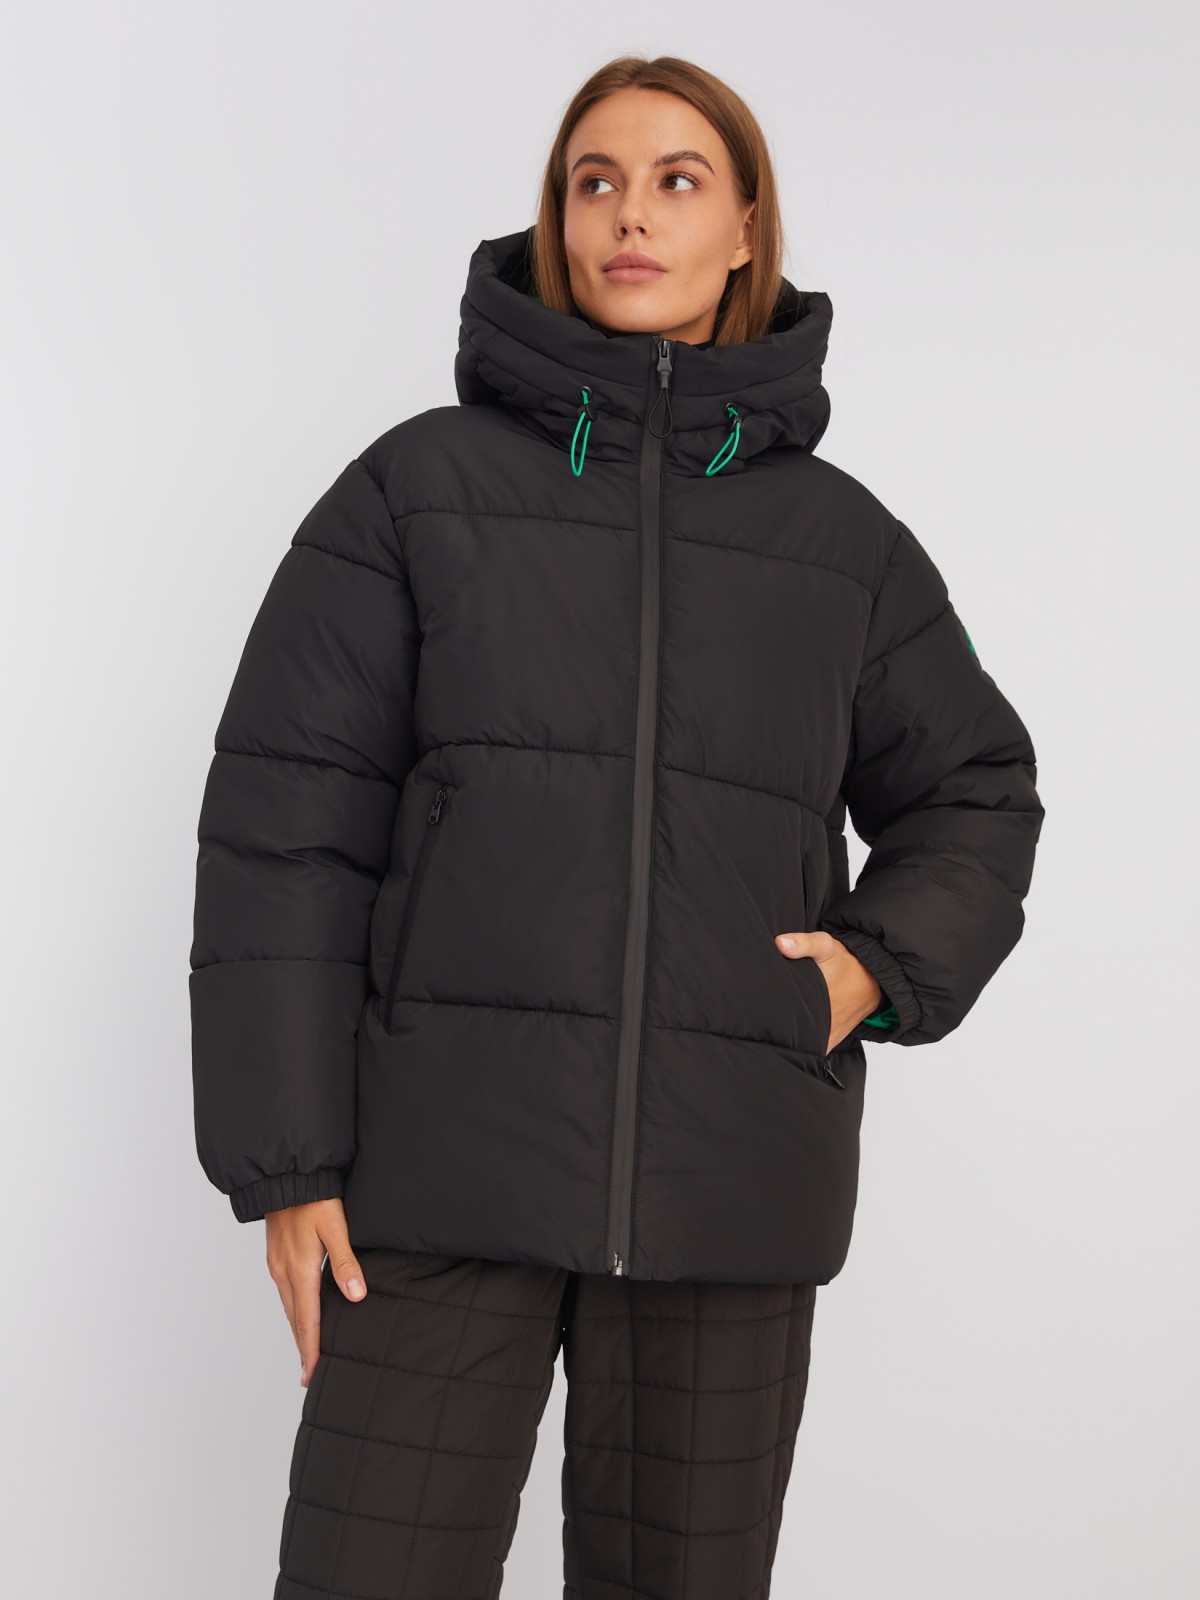 Тёплая дутая куртка с капюшоном и кулиской zolla 02342510L064, цвет черный, размер XS - фото 3